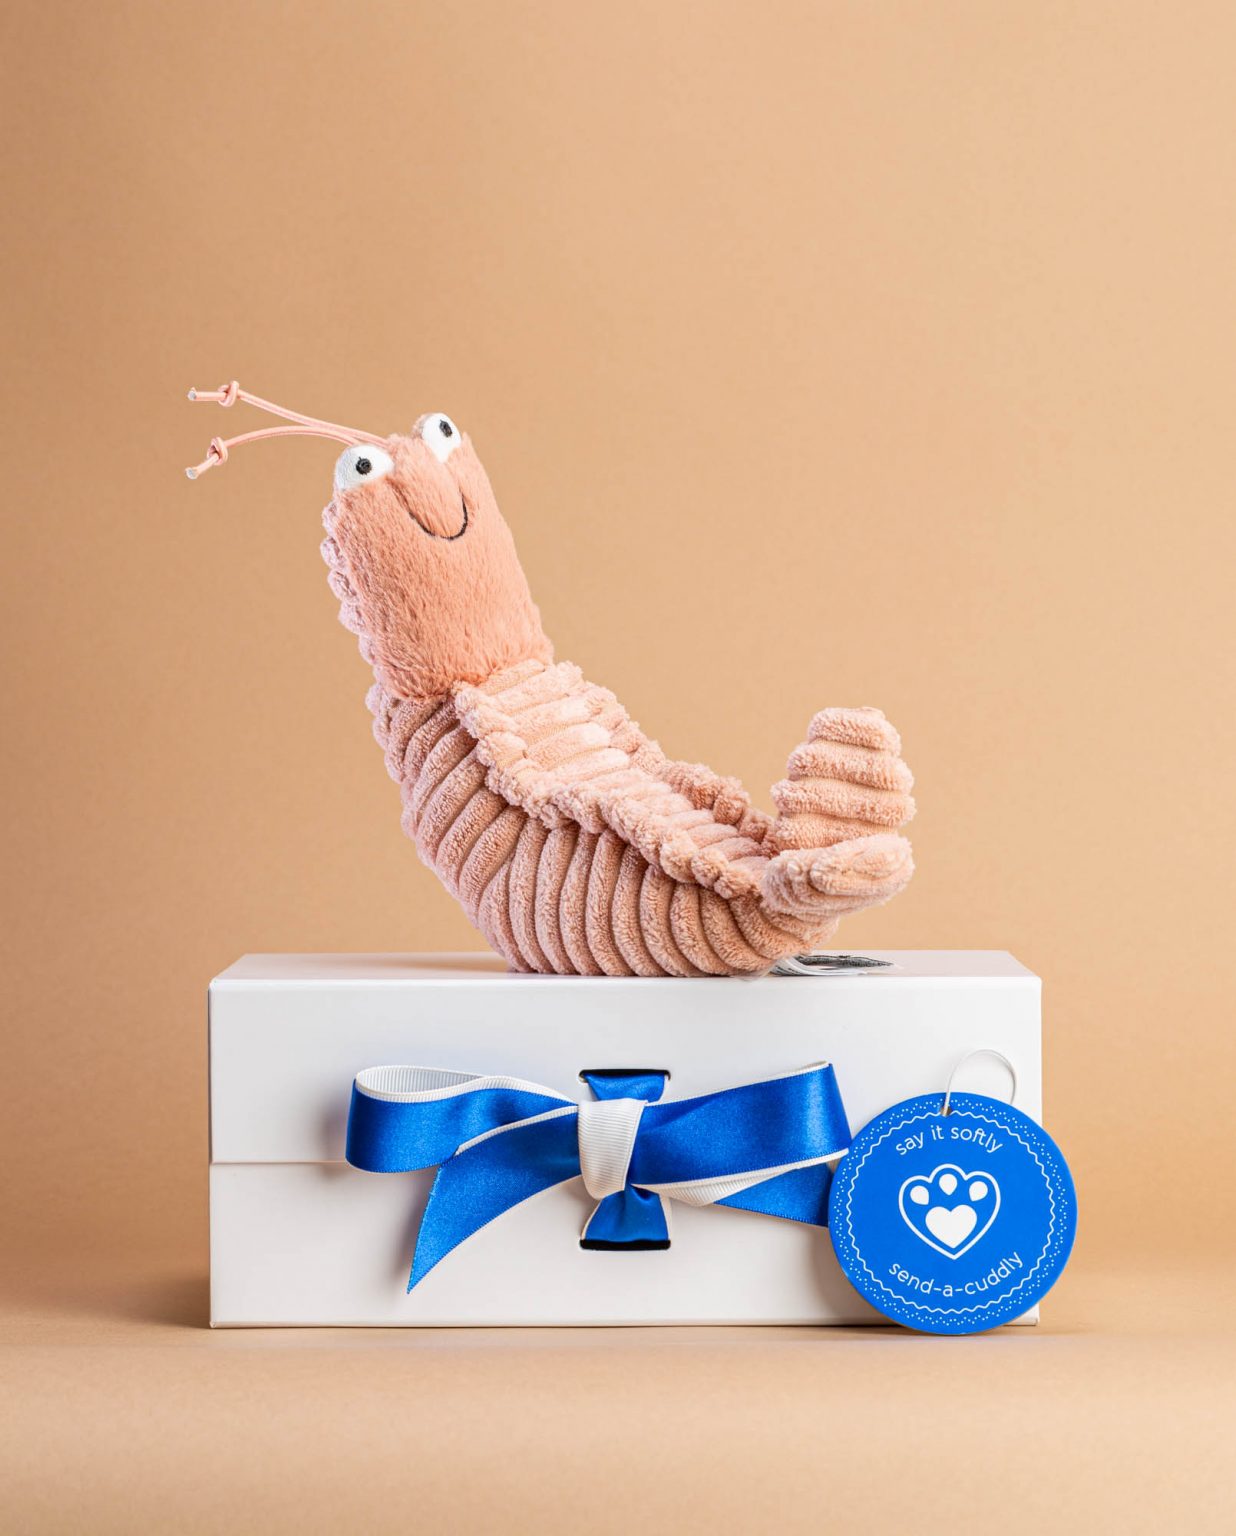 Shrimp Prawn soft toy - Send a Cuddly